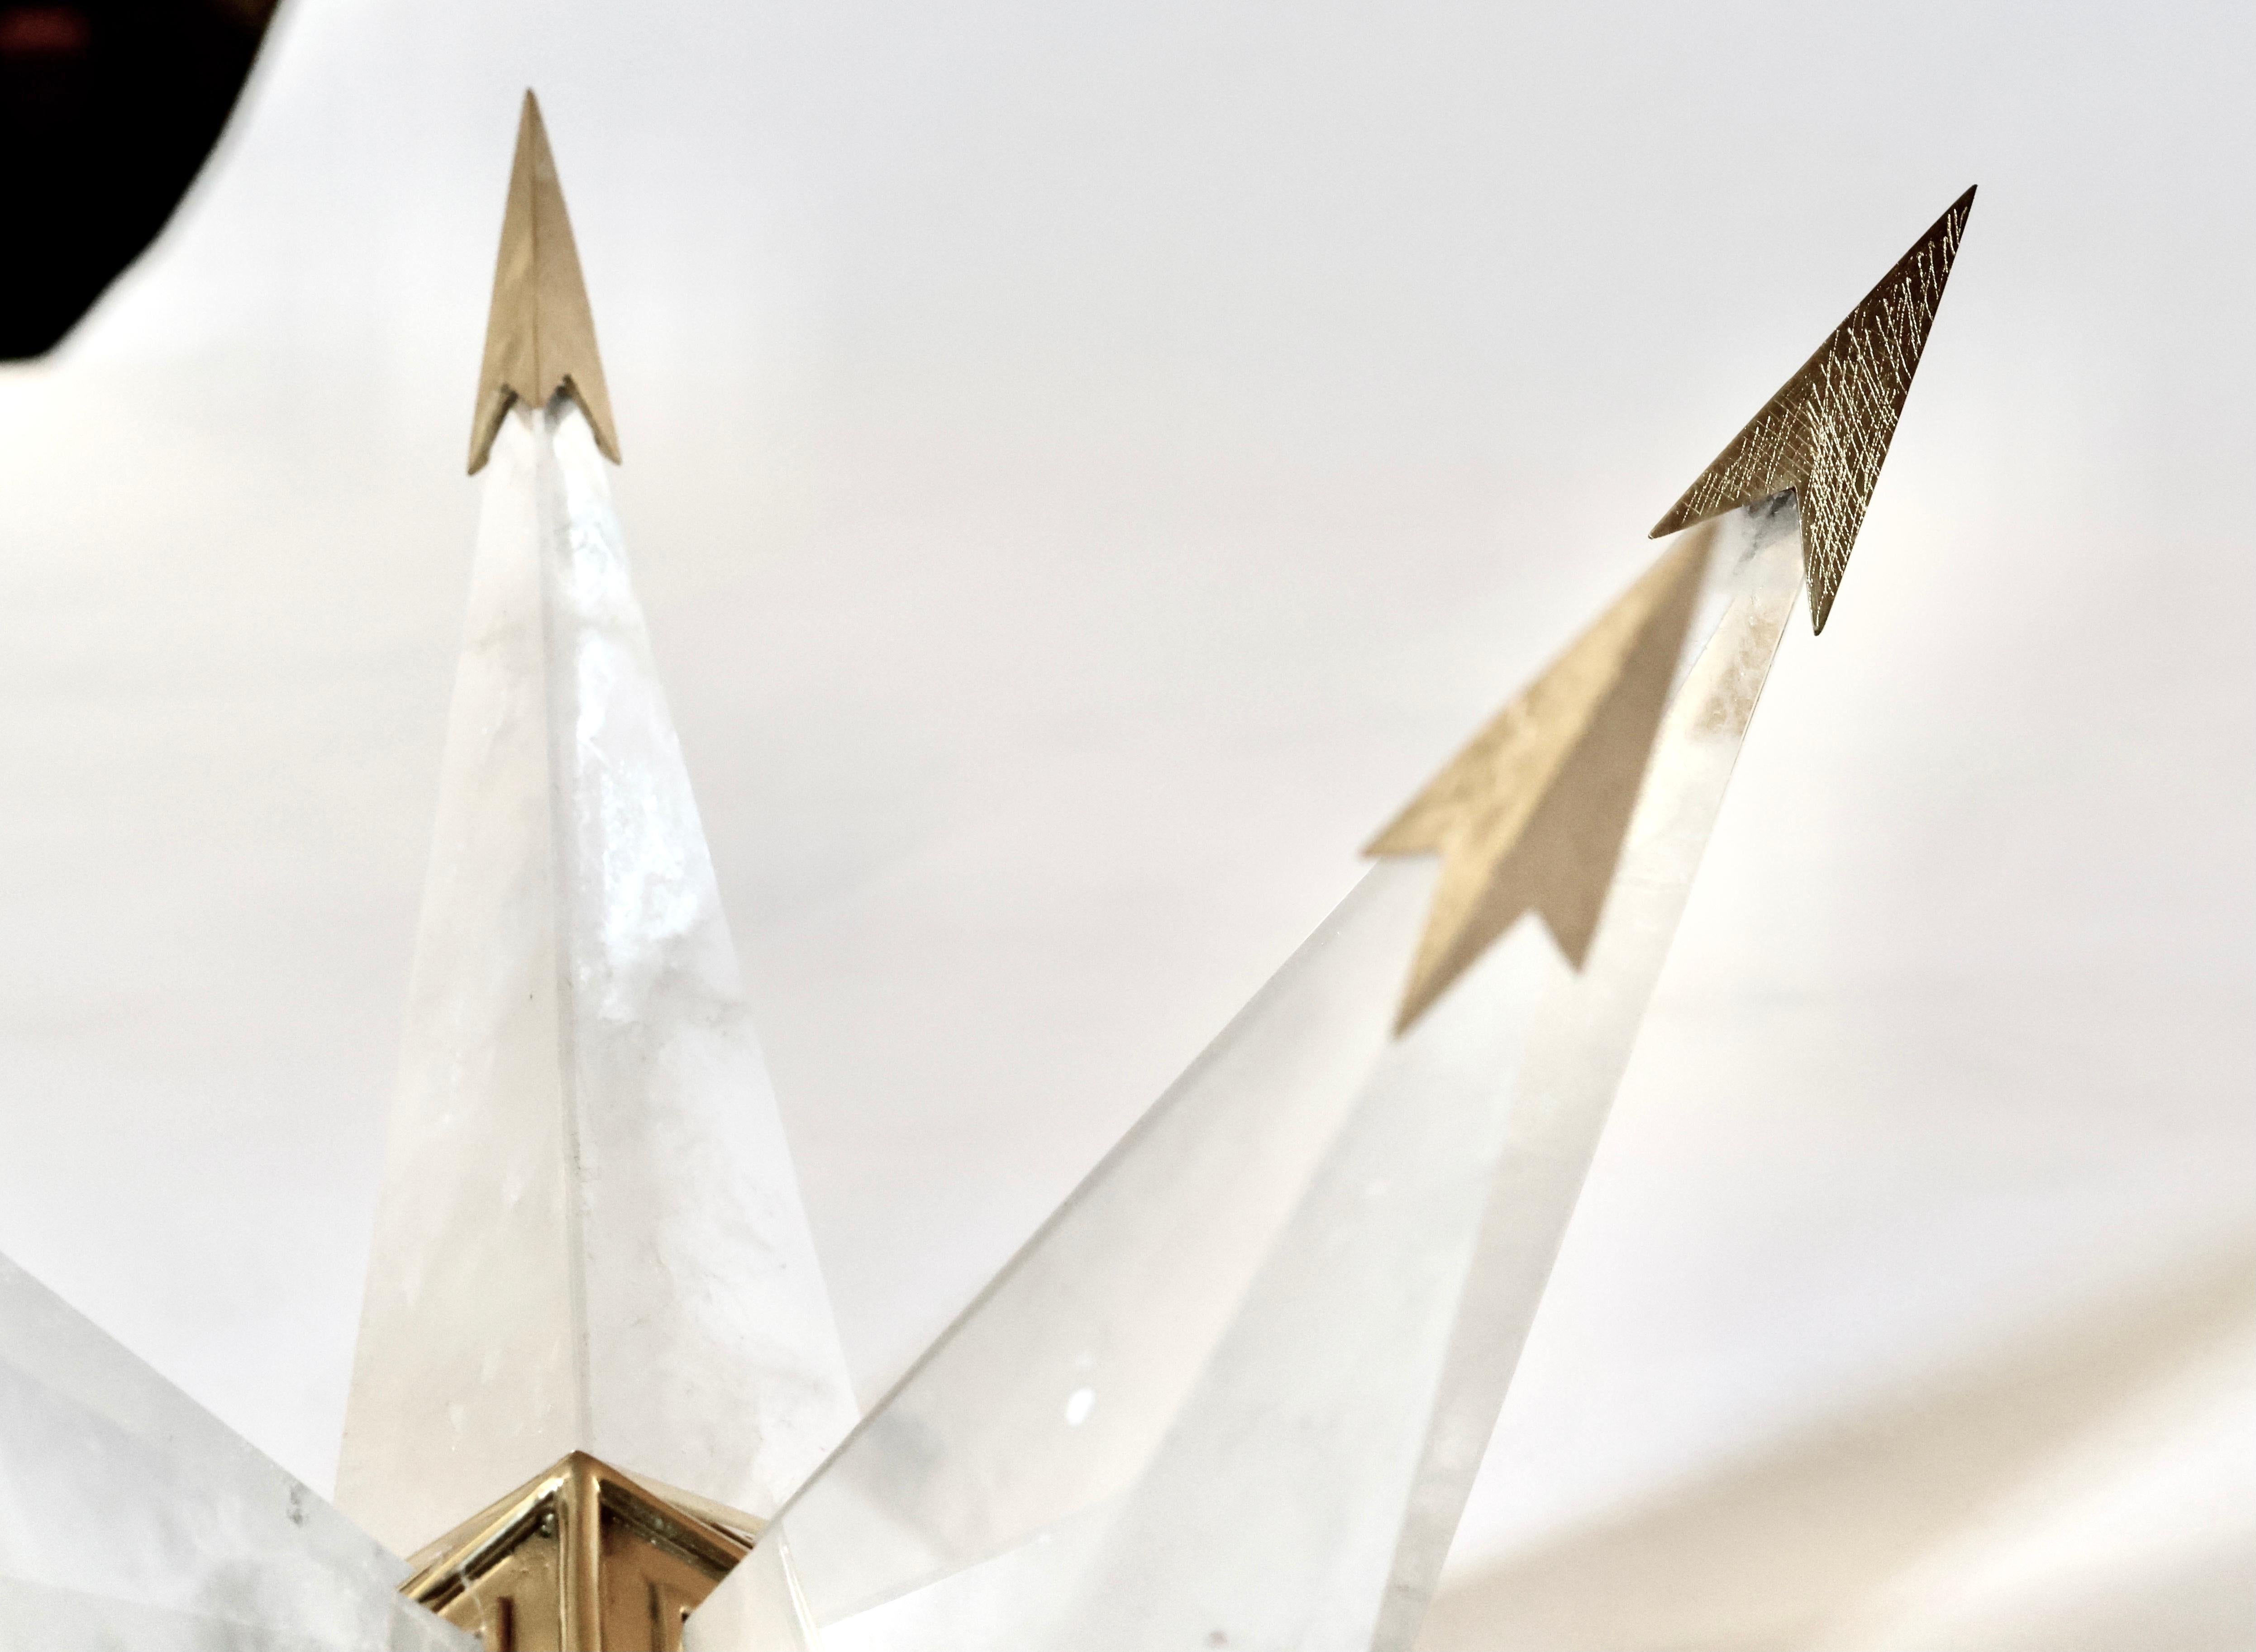 Fein geschnitzter sternförmiger Bergkristall-Kronleuchter mit poliertem Messingrahmen. Erstellt von Phoenix Gallery, NYC.
Der Kronleuchter ist 21,5